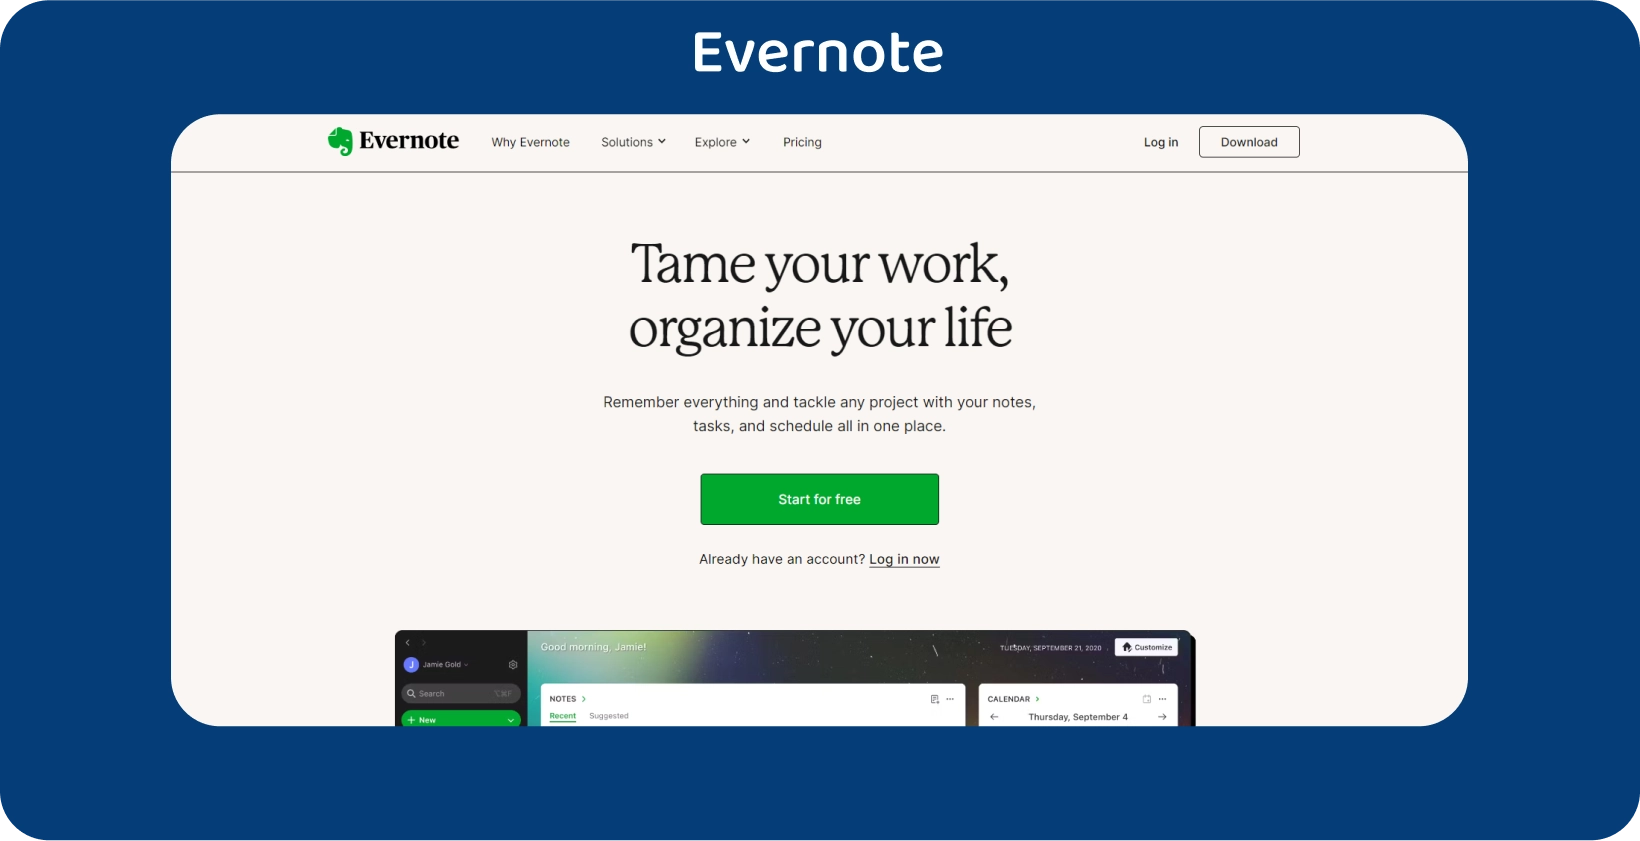 מסך רישום ההערות של Evernote עם רשימת משימות לביצוע, מייעל את ארגון המשימות.